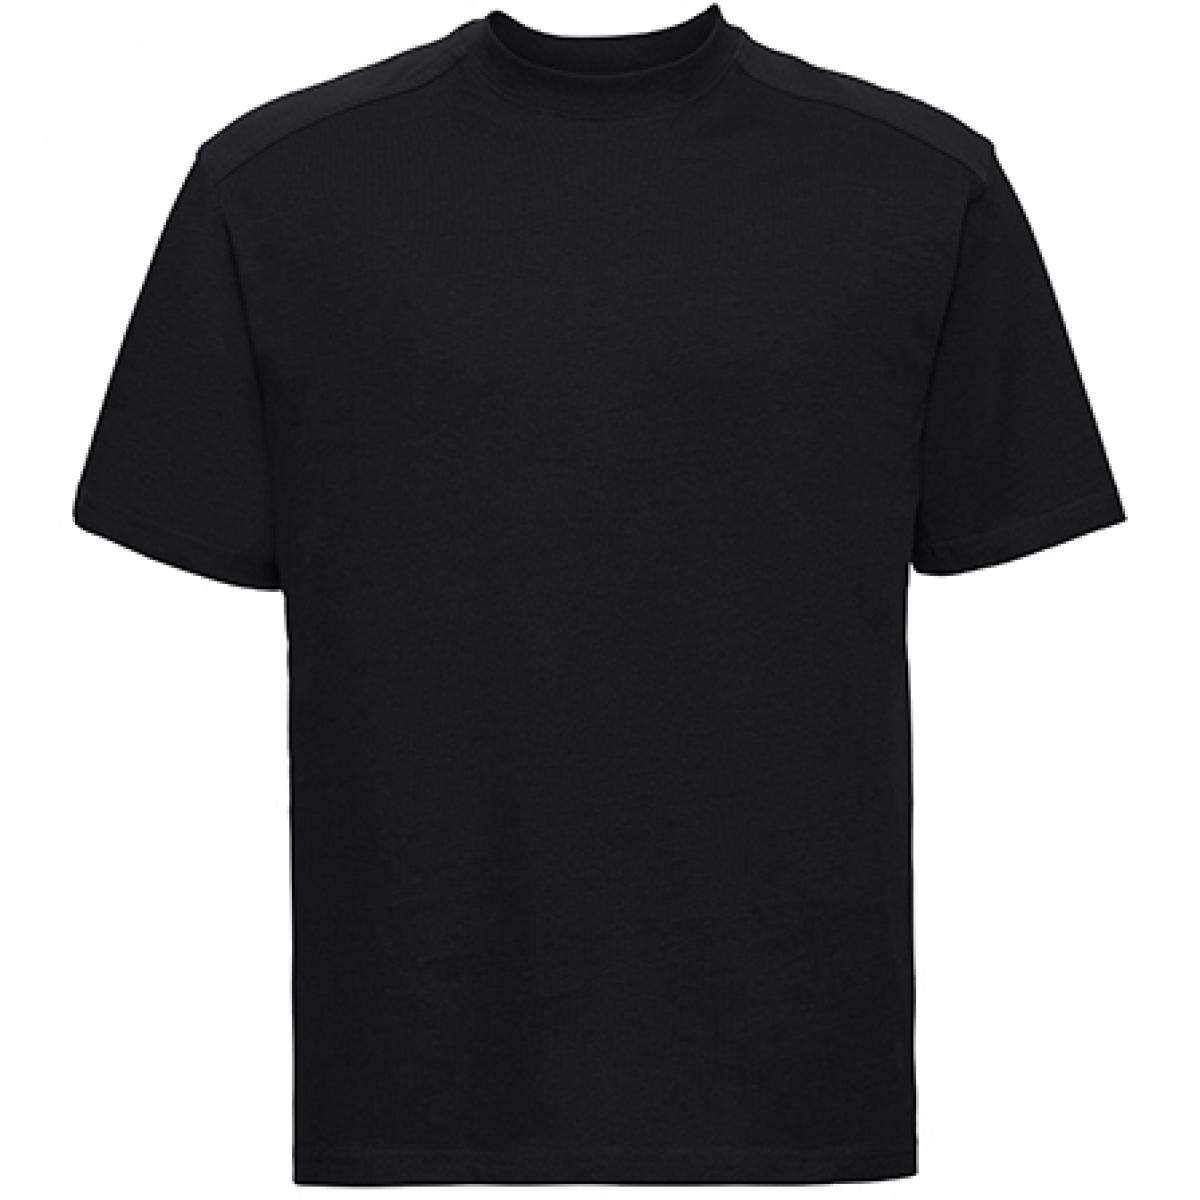 Hersteller: Russell Herstellernummer: R-010M-0 Artikelbezeichnung: Workwear Herren T-Shirt - Waschbar bis 60 °C -  bis 4XL Farbe: Black